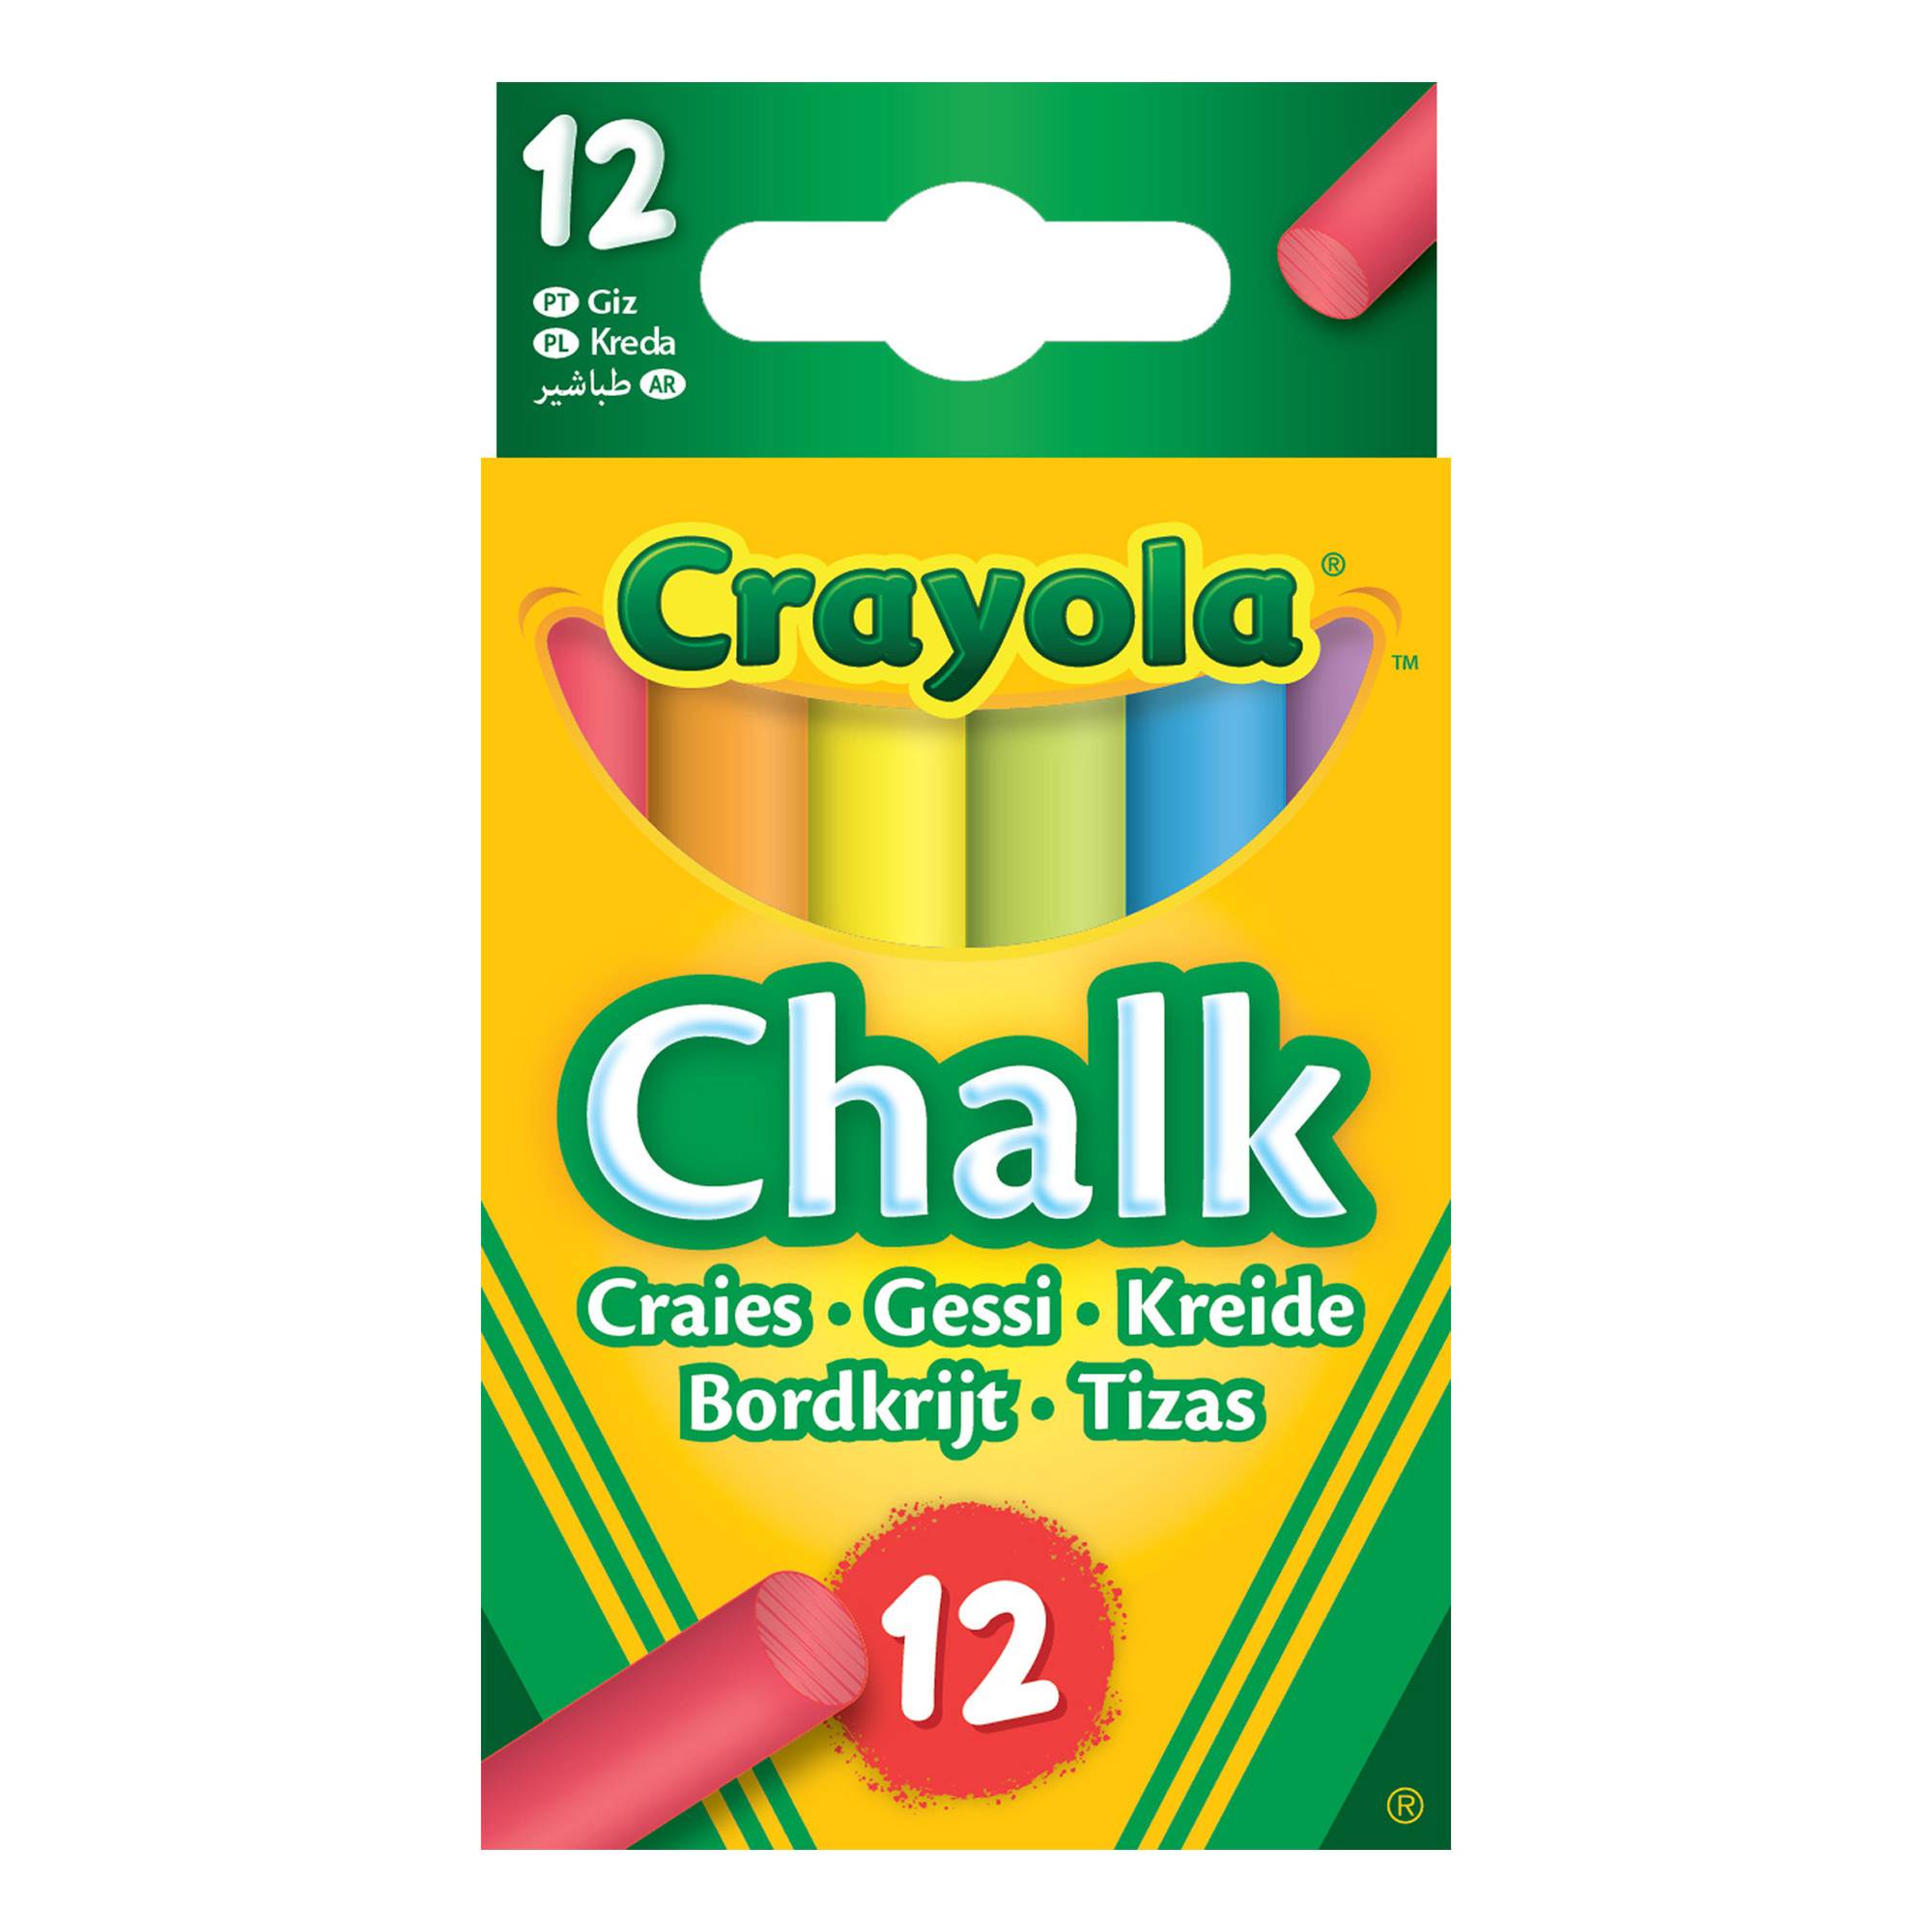 Crayola Crayons - 24 Count - Web Exclusives